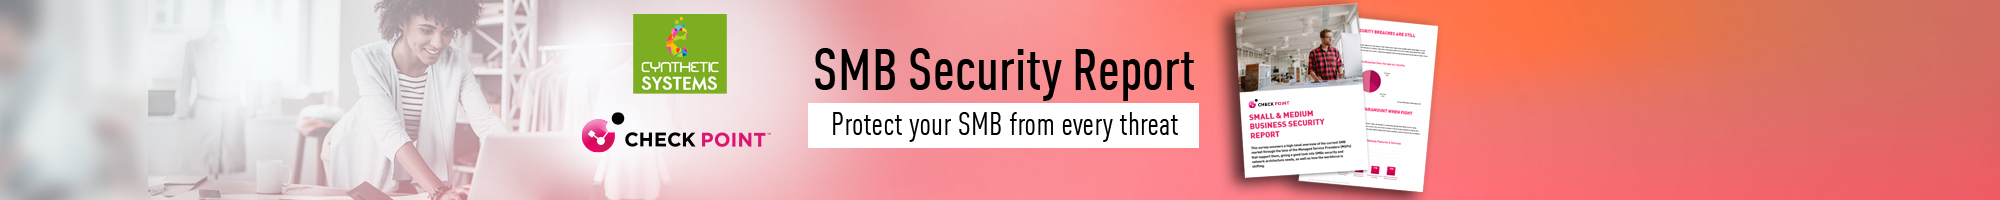 SMB Security Report Denver